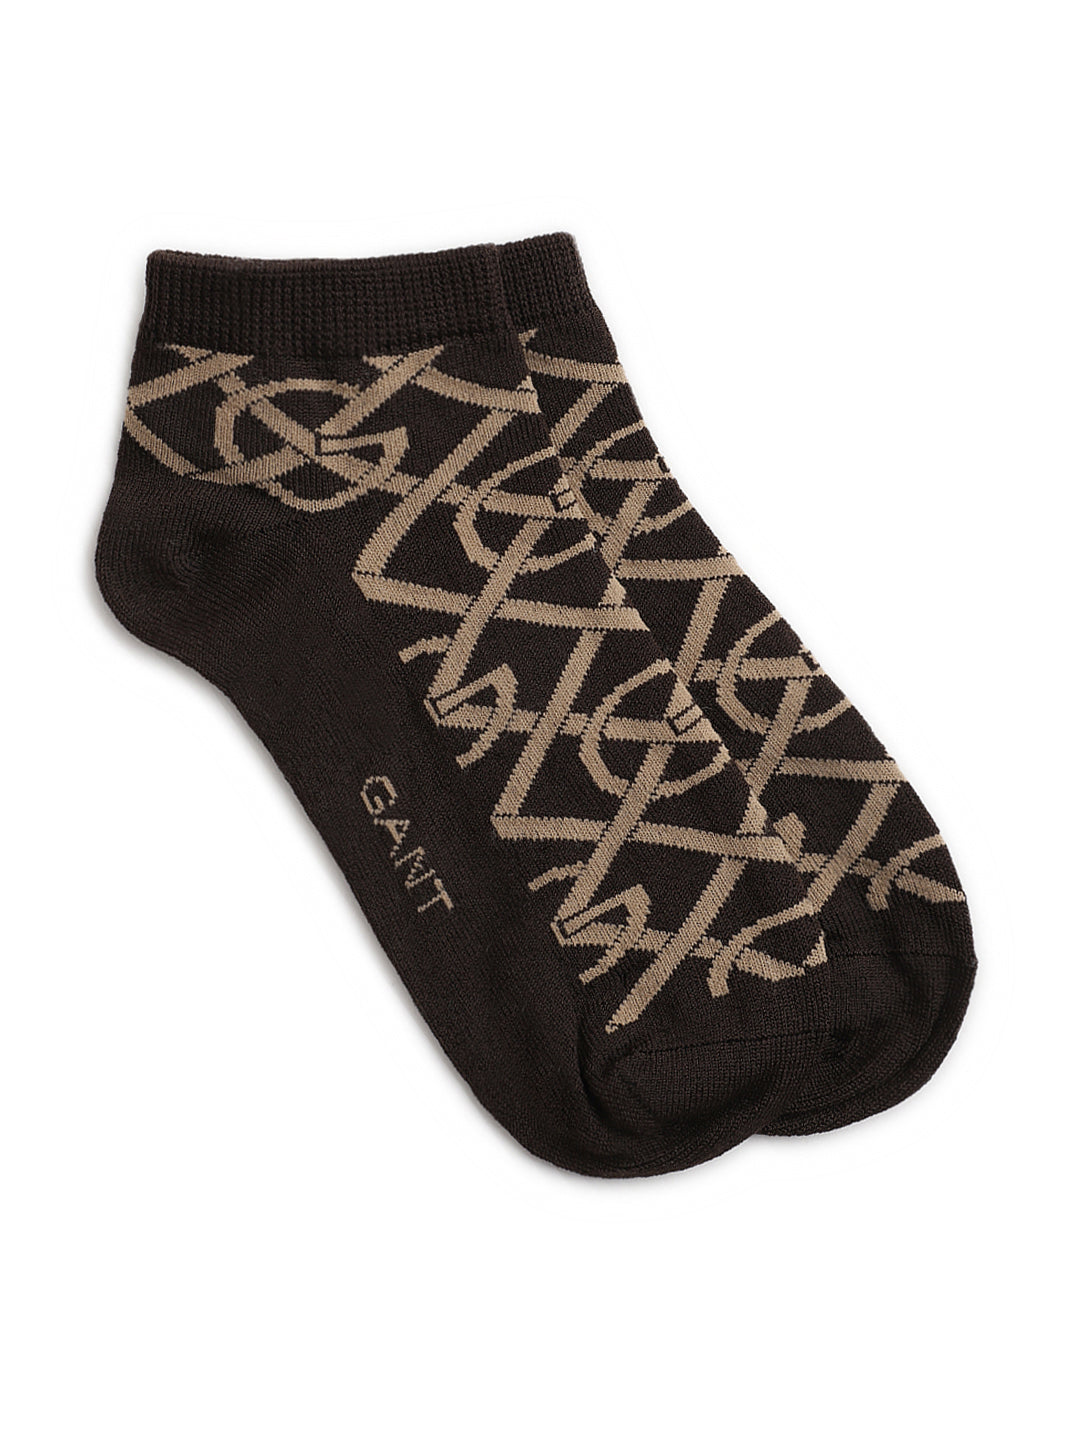 Gant Women Brown Printed Socks (Pack of 3)